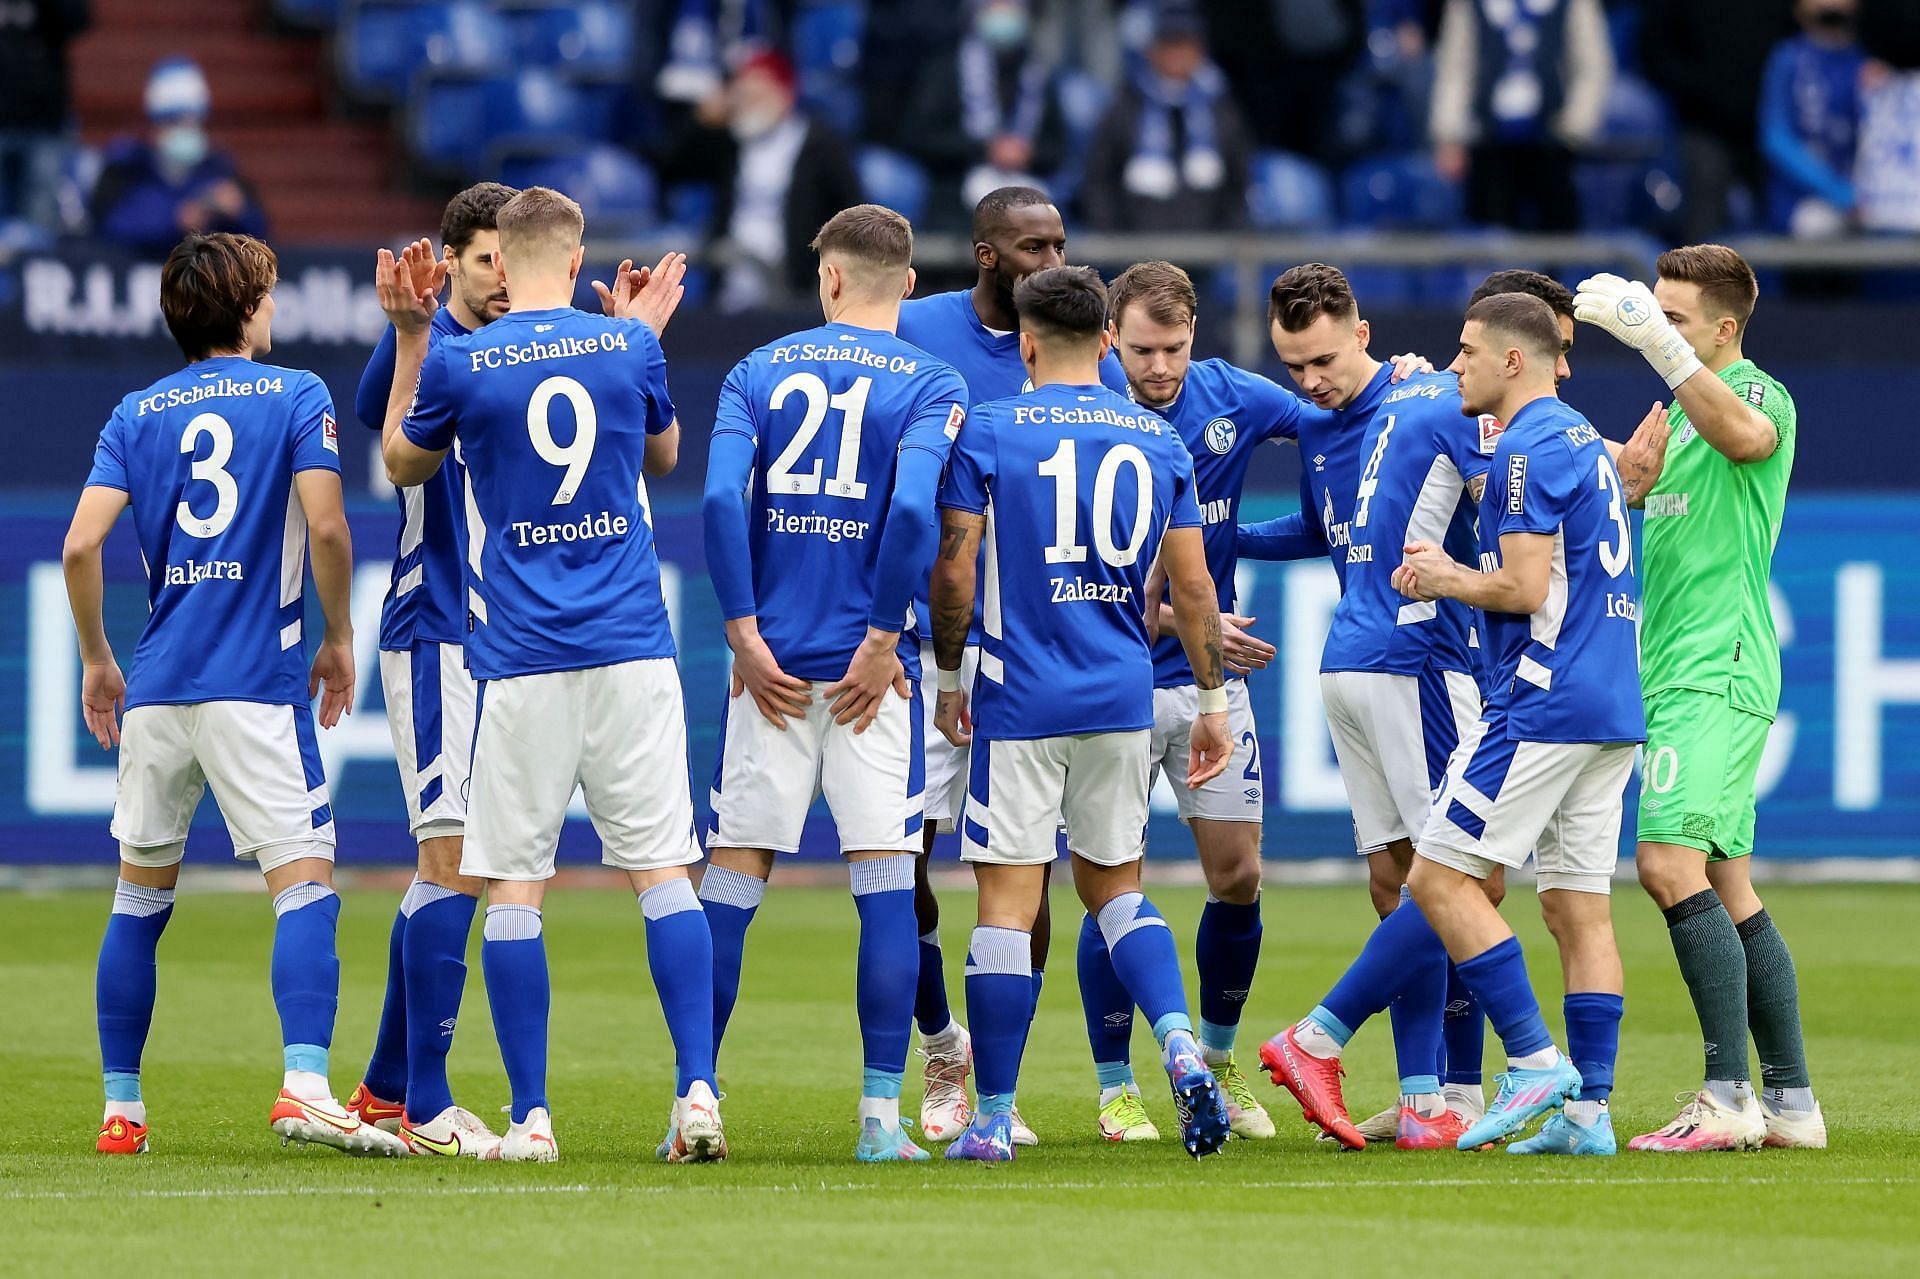 Karlsruher vs Schalke preview - 2. Bundesliga